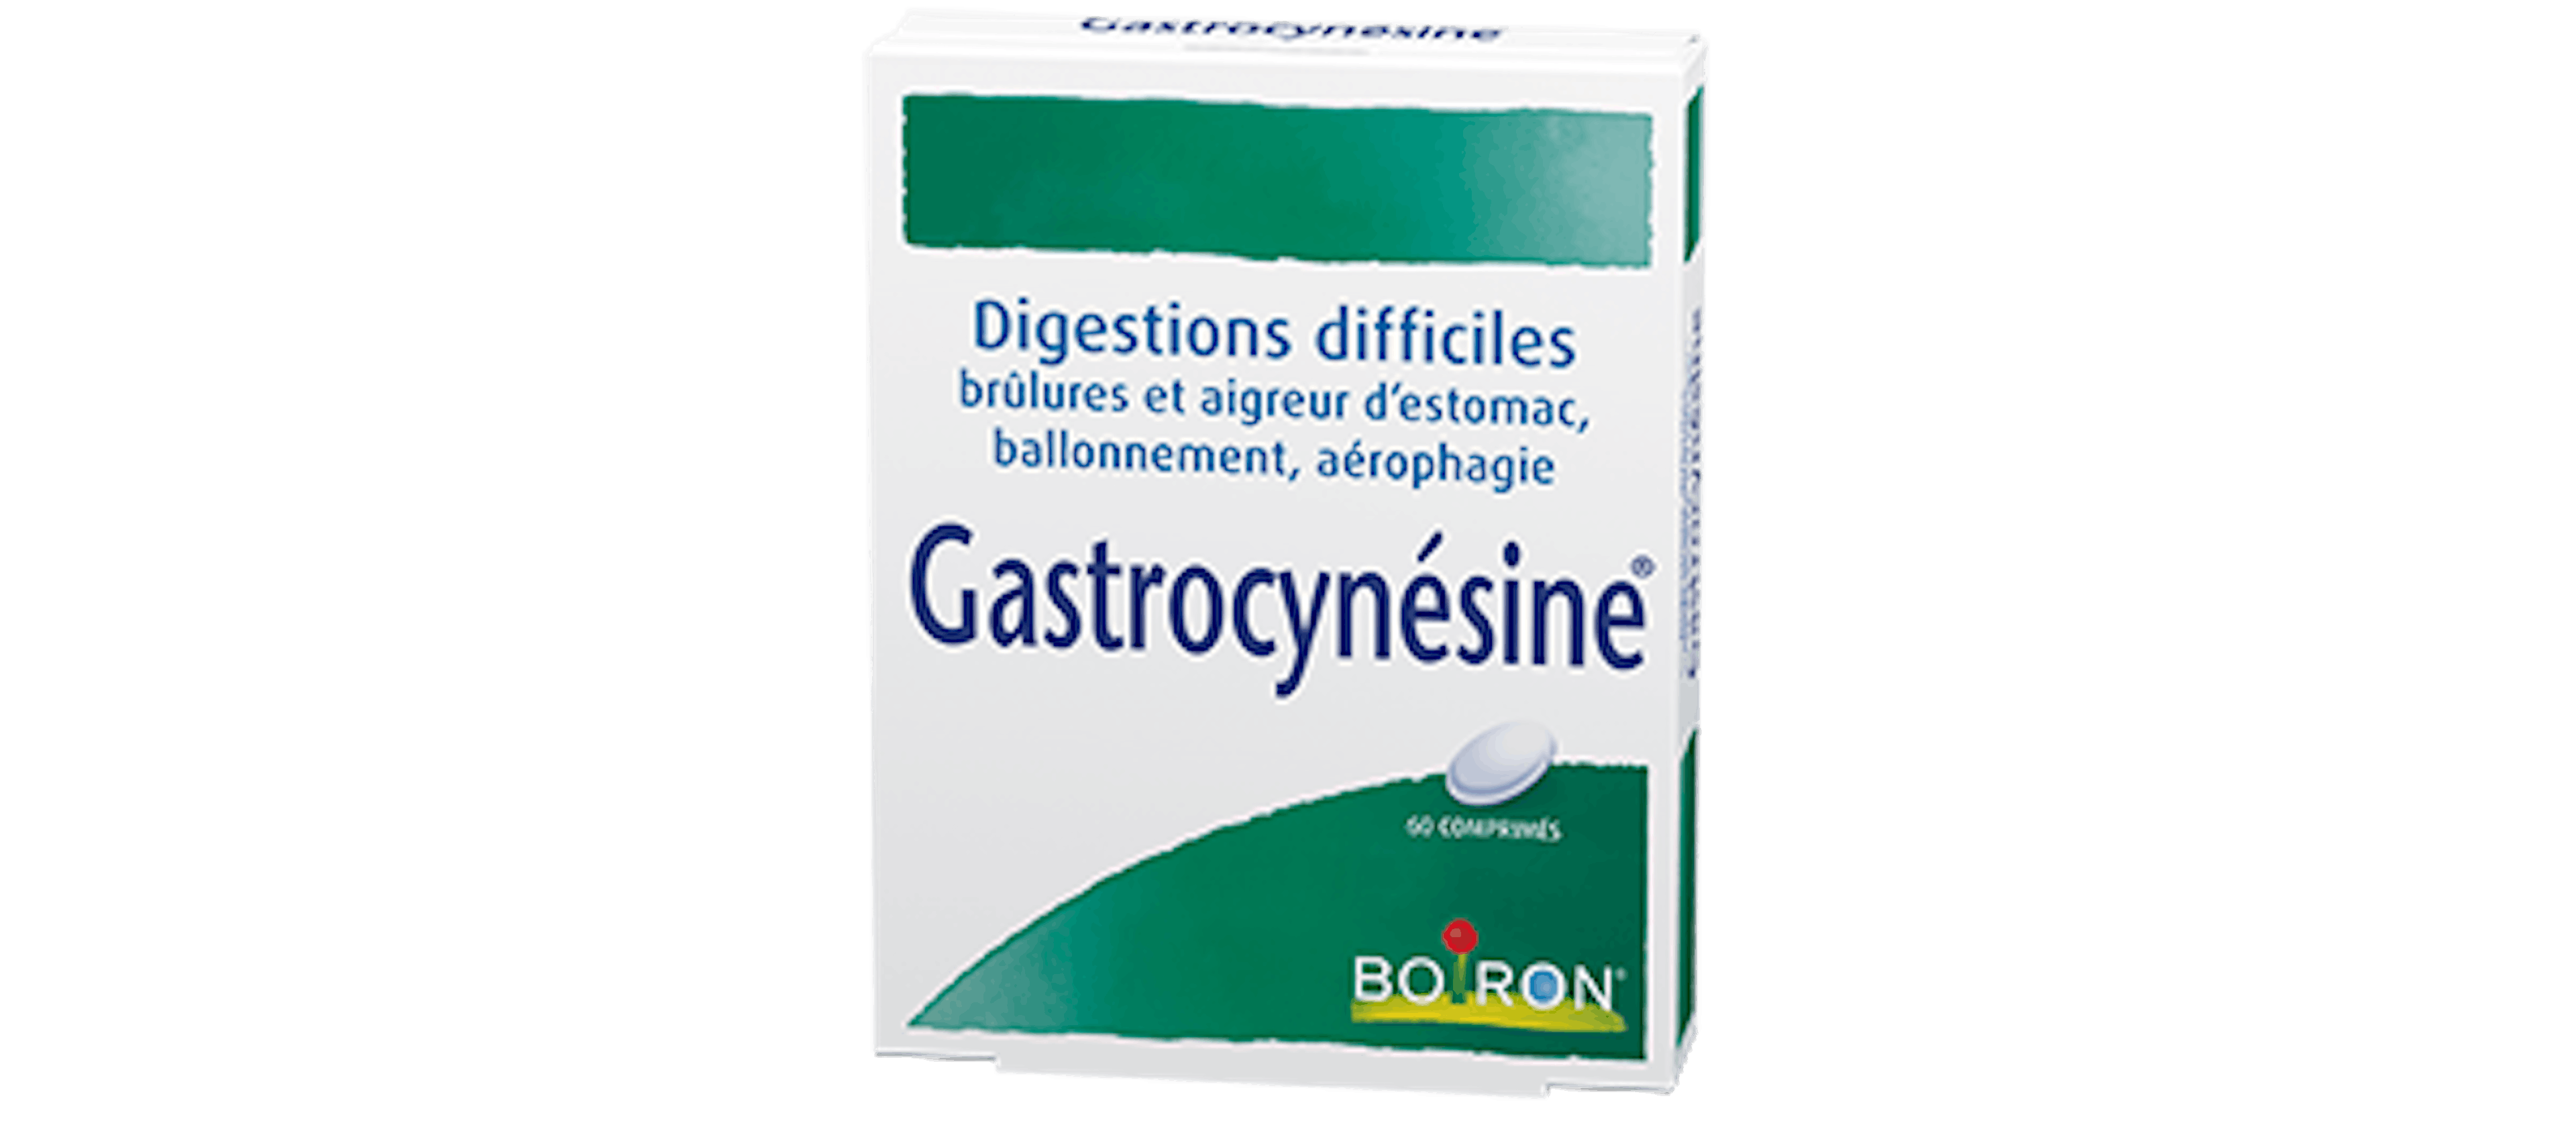 Homéopathie digestion difficiles, aigreur d'estomac - Gastrocynesine® Boiron